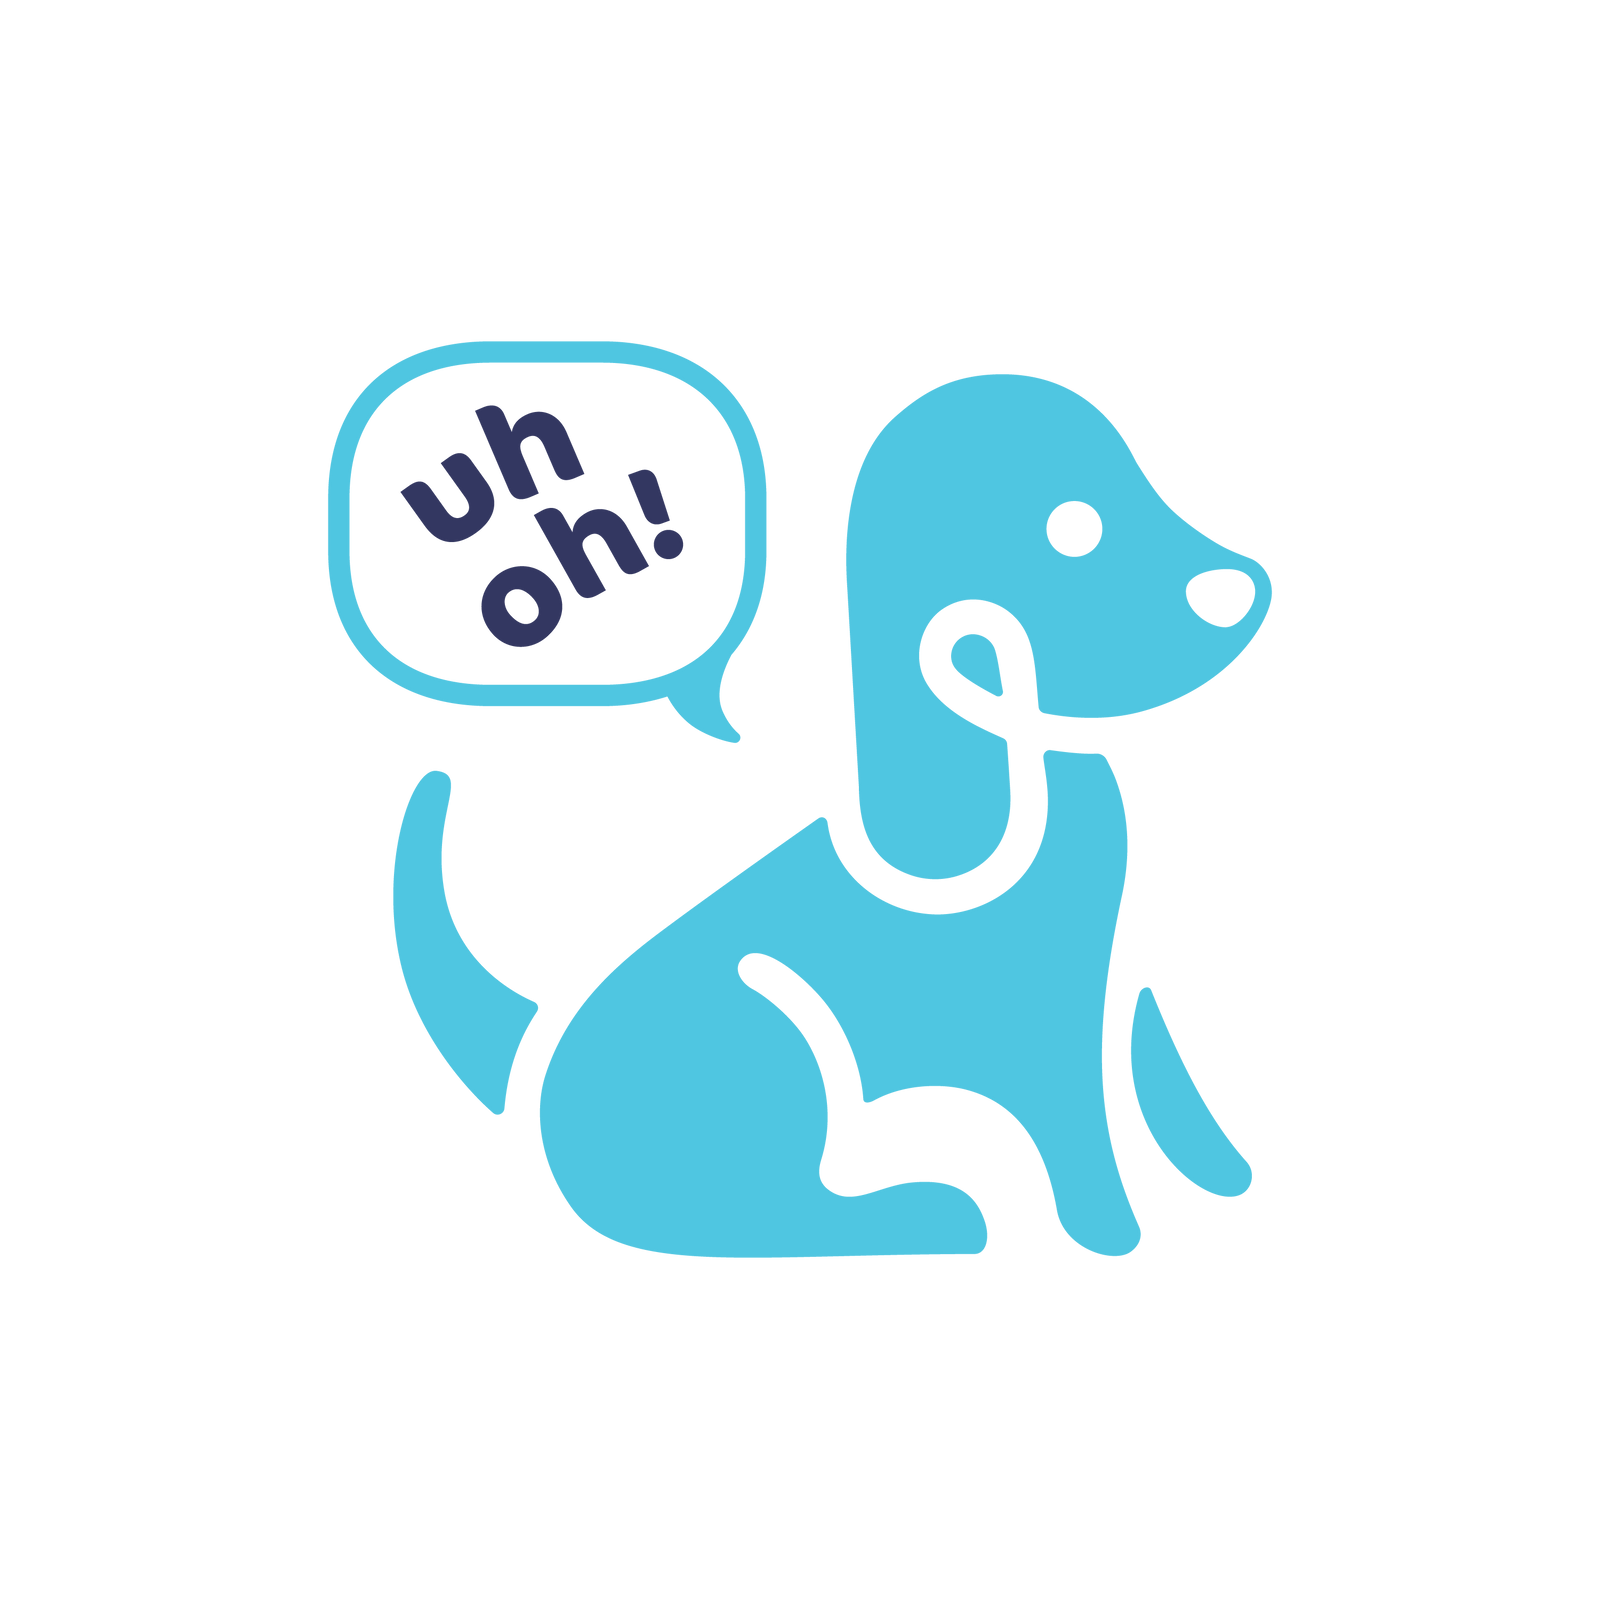 Puppylation Health's logo dog saying "Uh-Oh!"